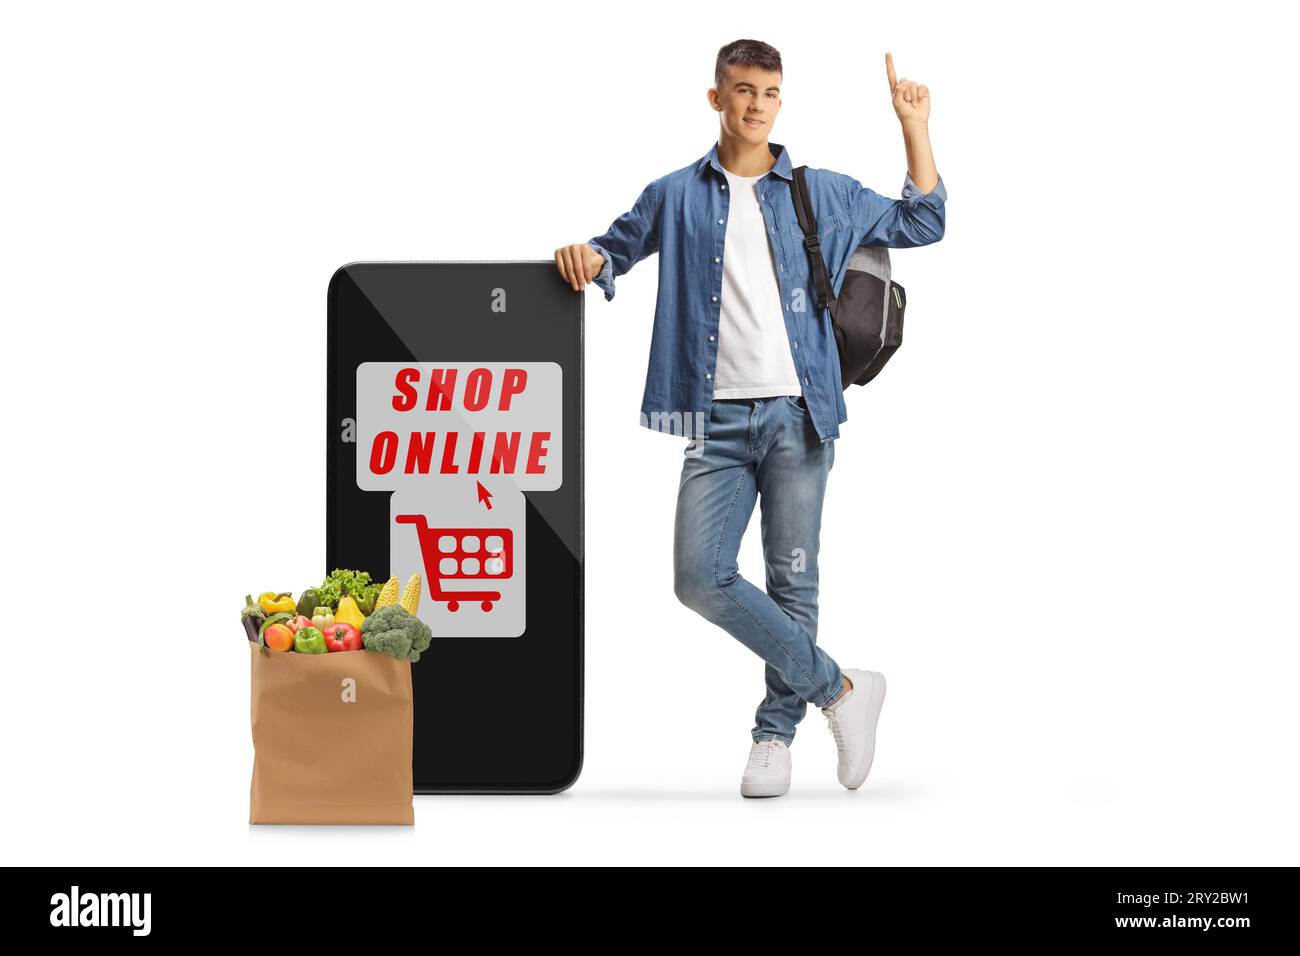 Studente maschio che punta verso l'alto e si appoggia su un telefono cellulare con l'app per lo shopping online e una borsa della spesa isolata su sfondo bianco Foto Stock